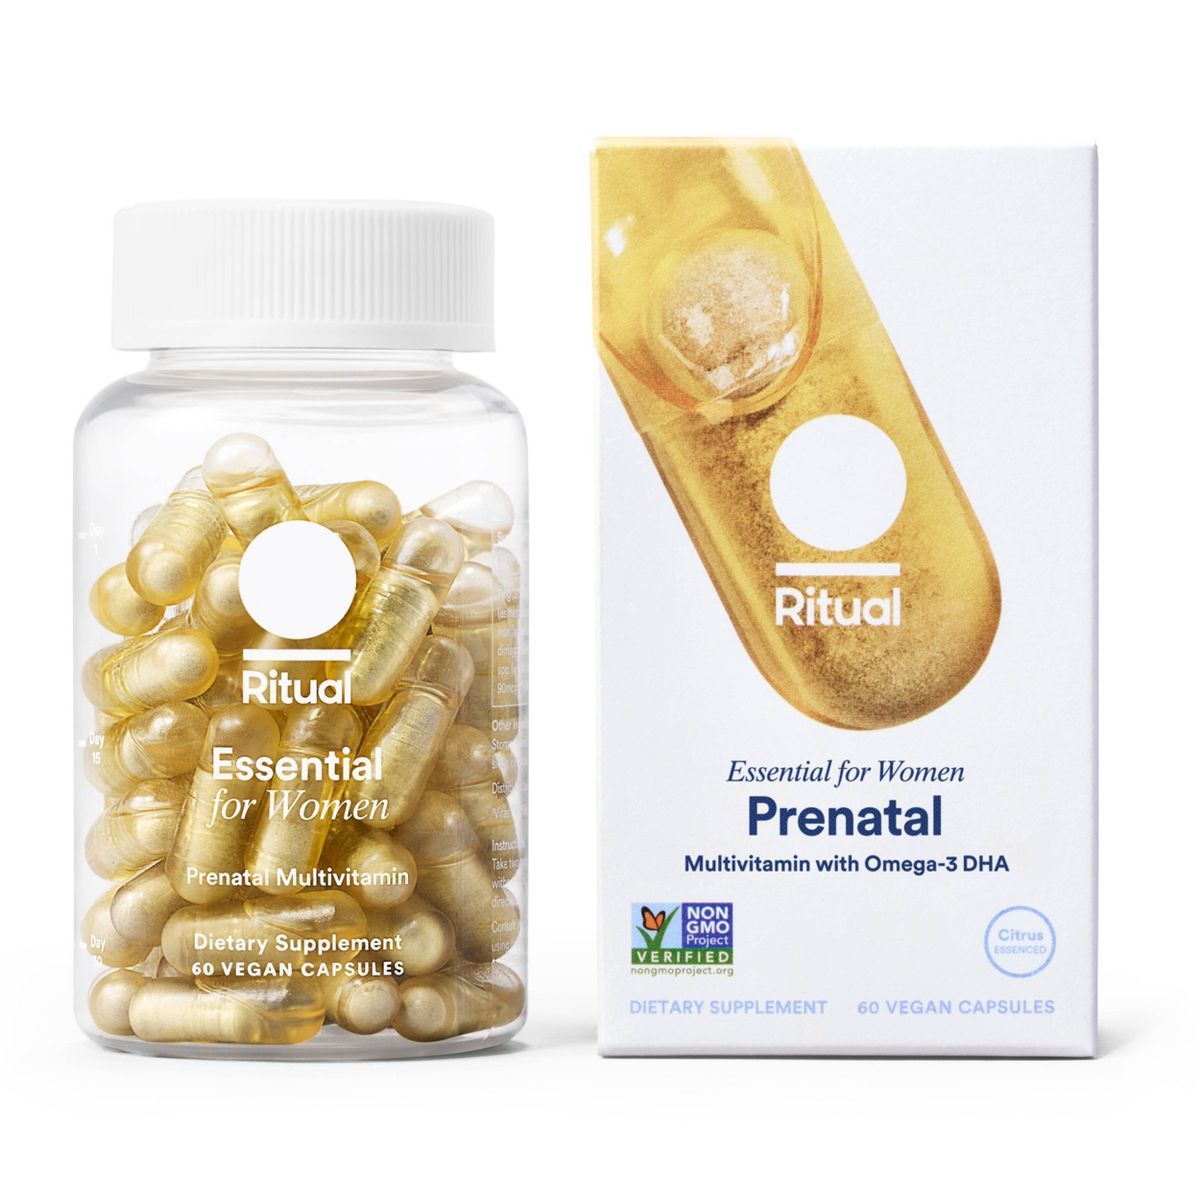 Ritual Essential Vegan Prenatal Multivitamin for Women Capsules - Citrus - 60ct | Target